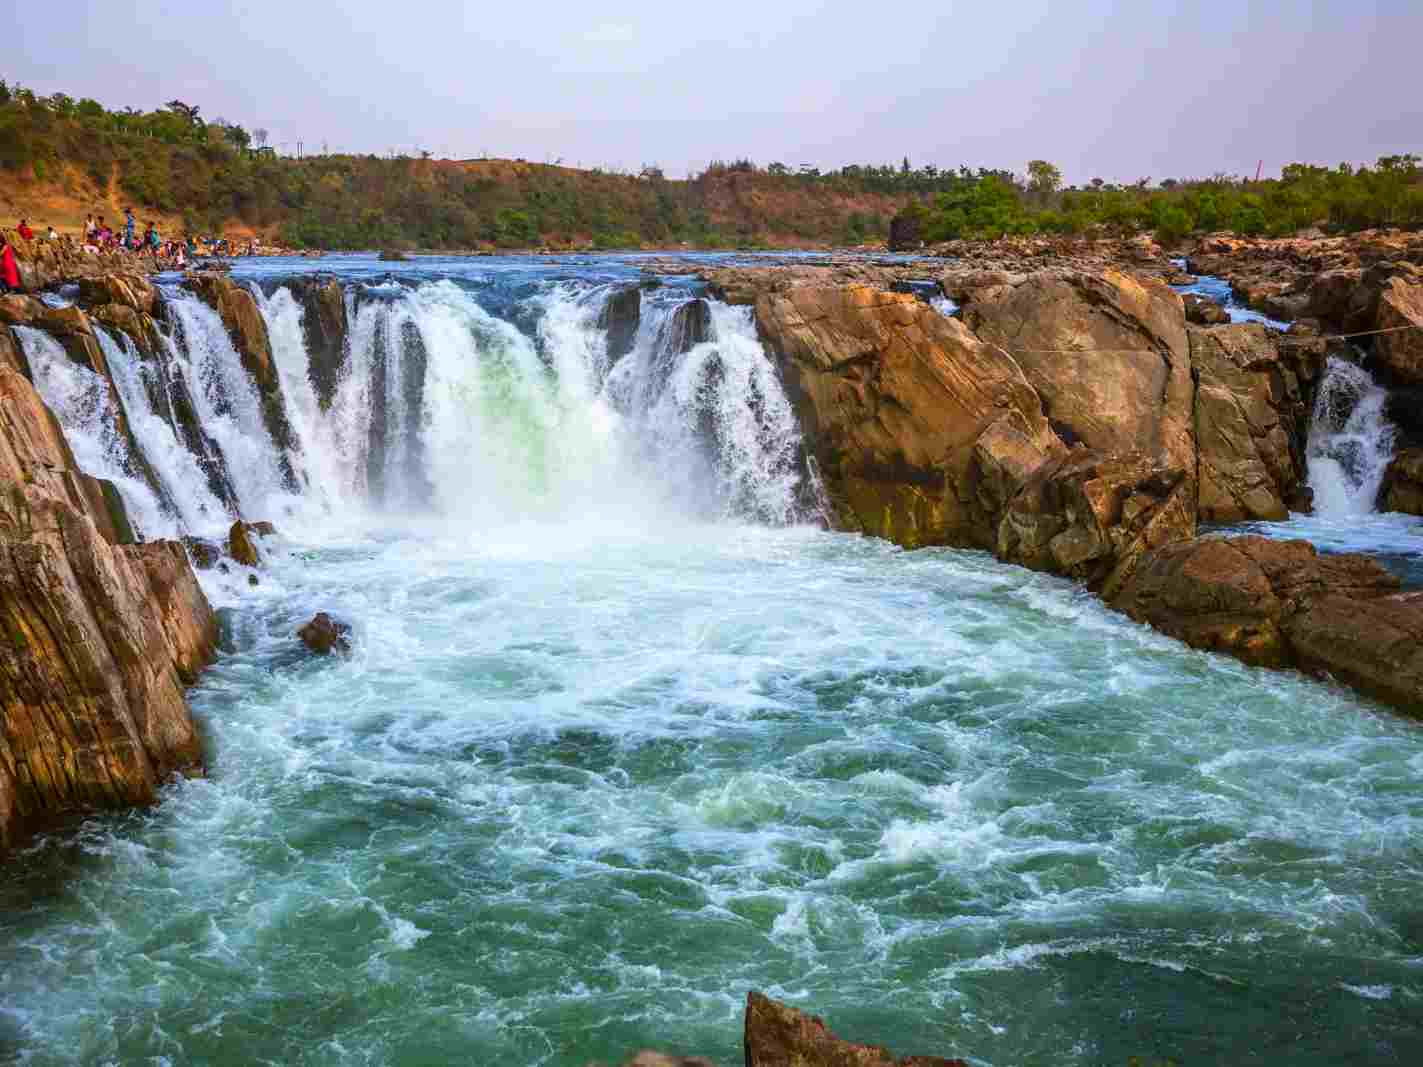 Dhuandhar falls